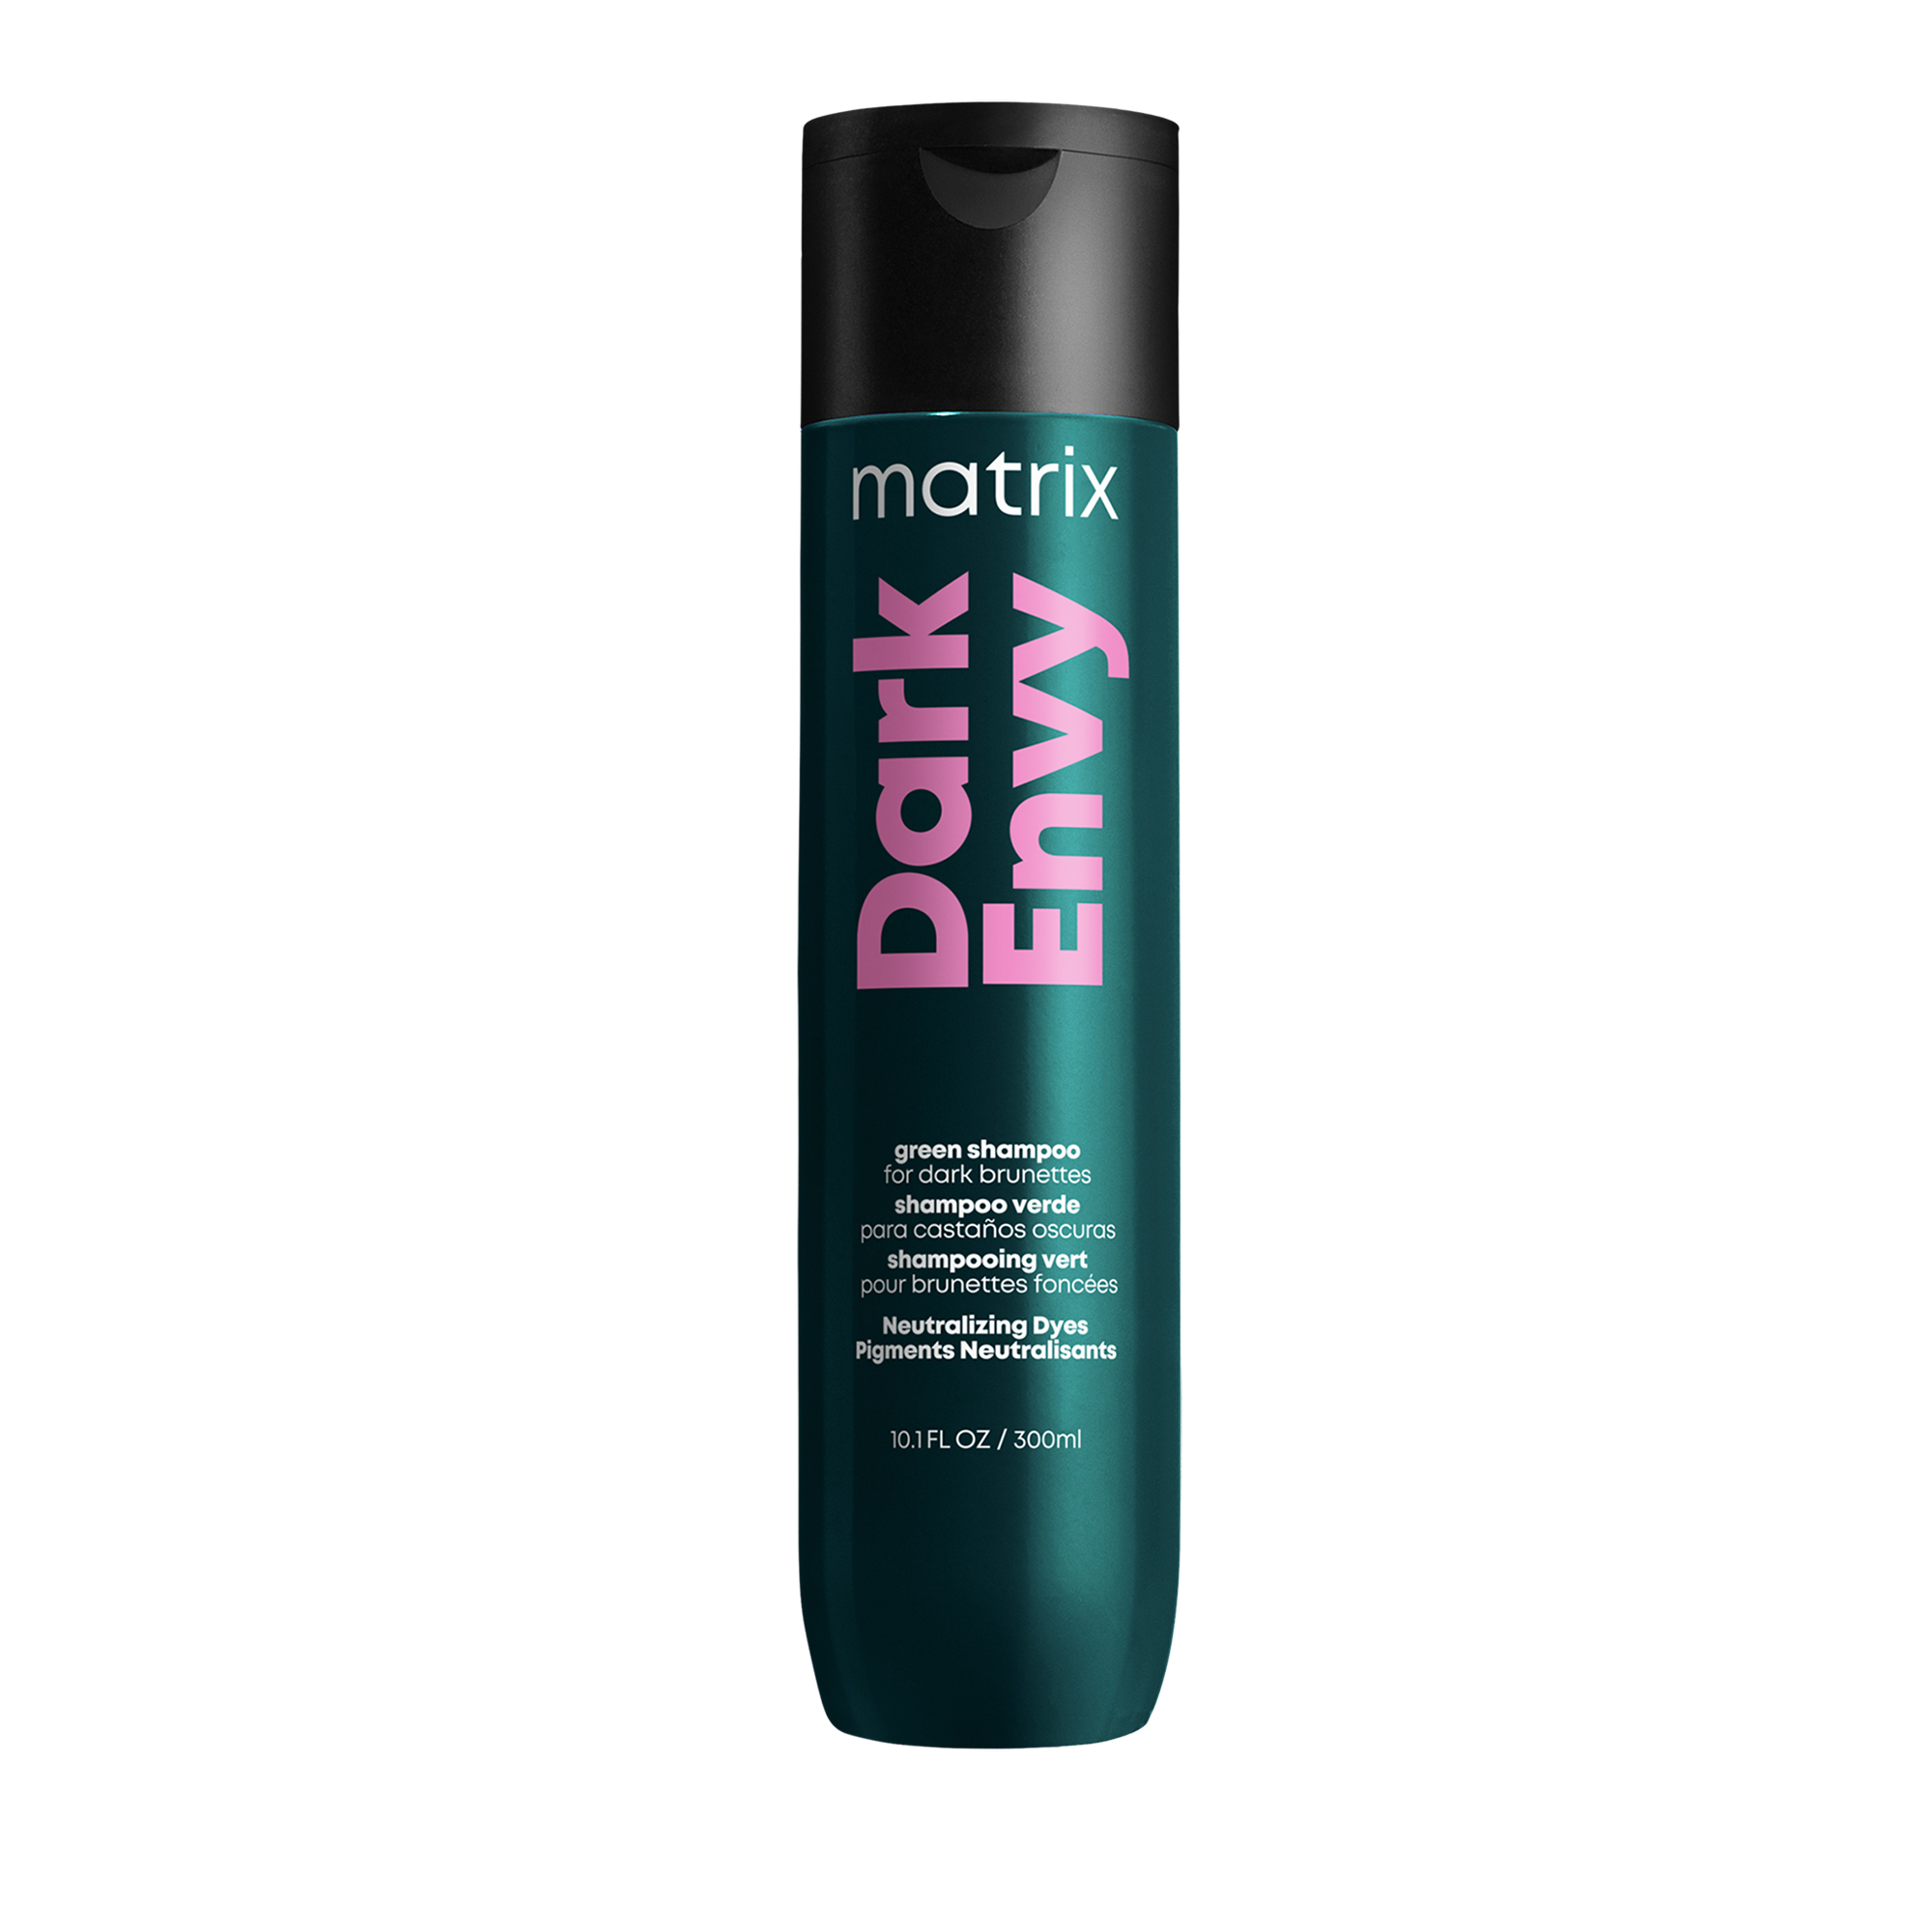 Matrix Šampon neutralizující červené odstíny na tmavých vlasech Total Results Dark Envy (Shampoo) 300 ml